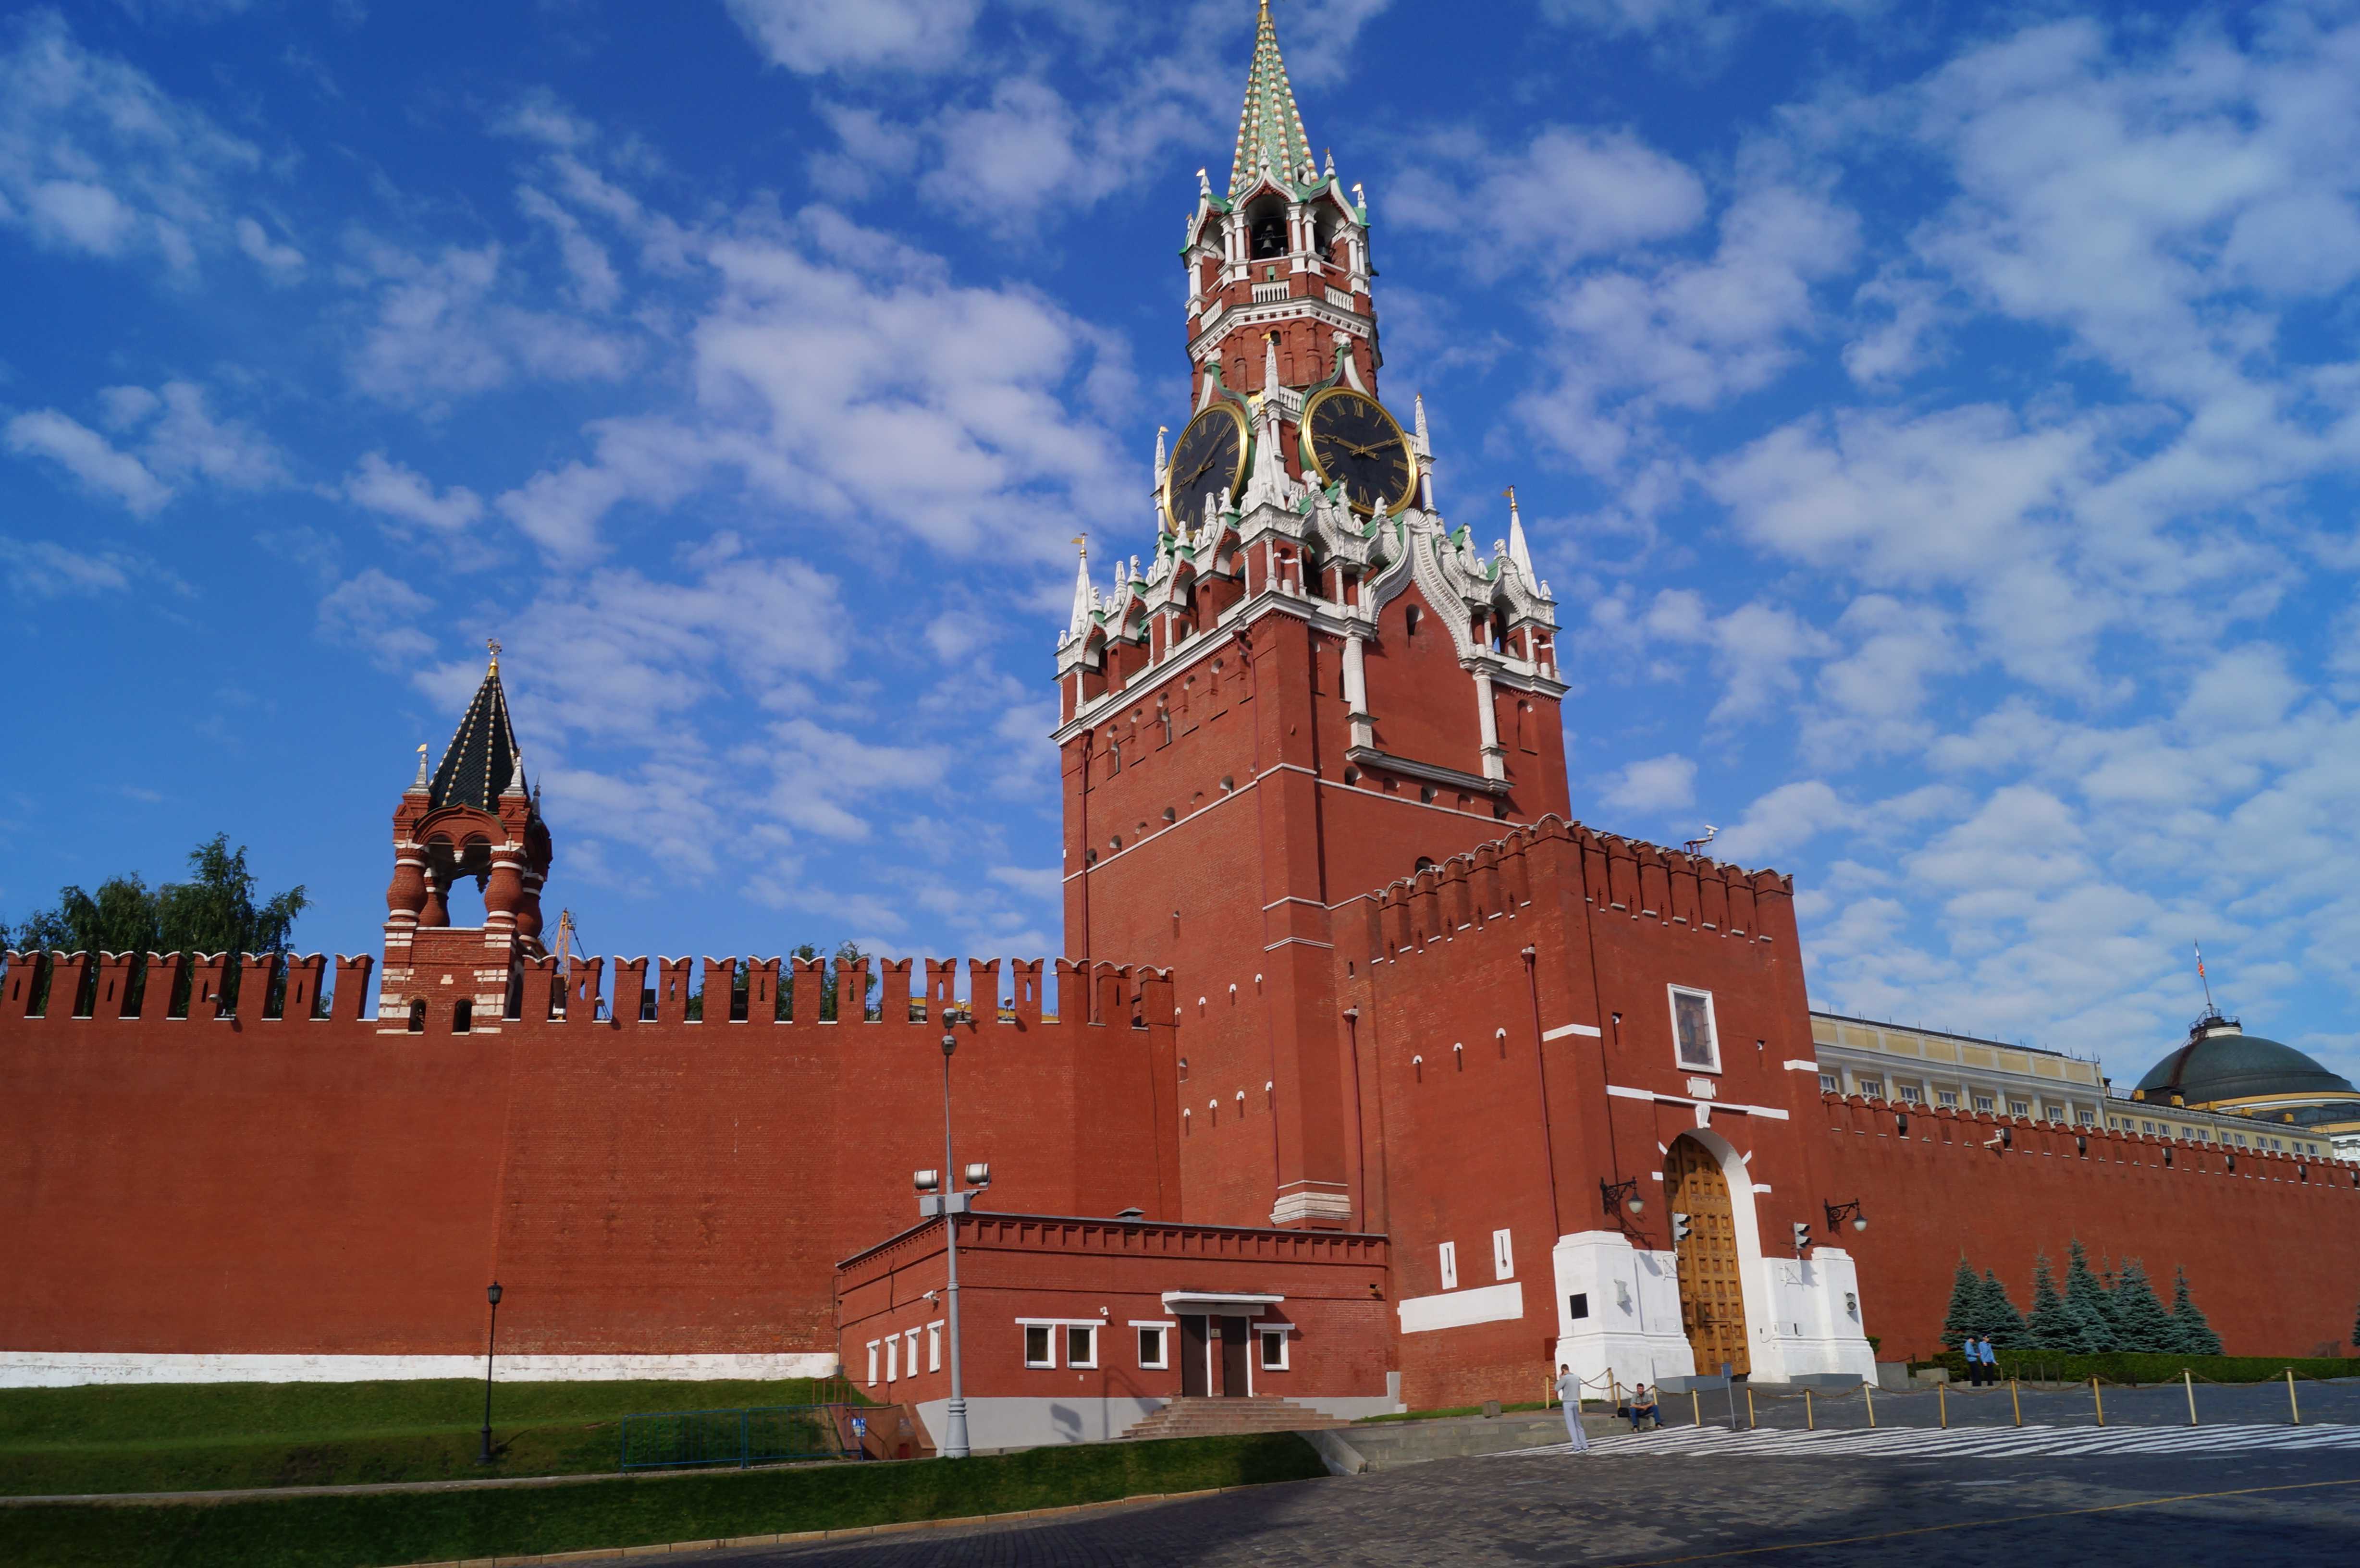 спасская башня кремля описание